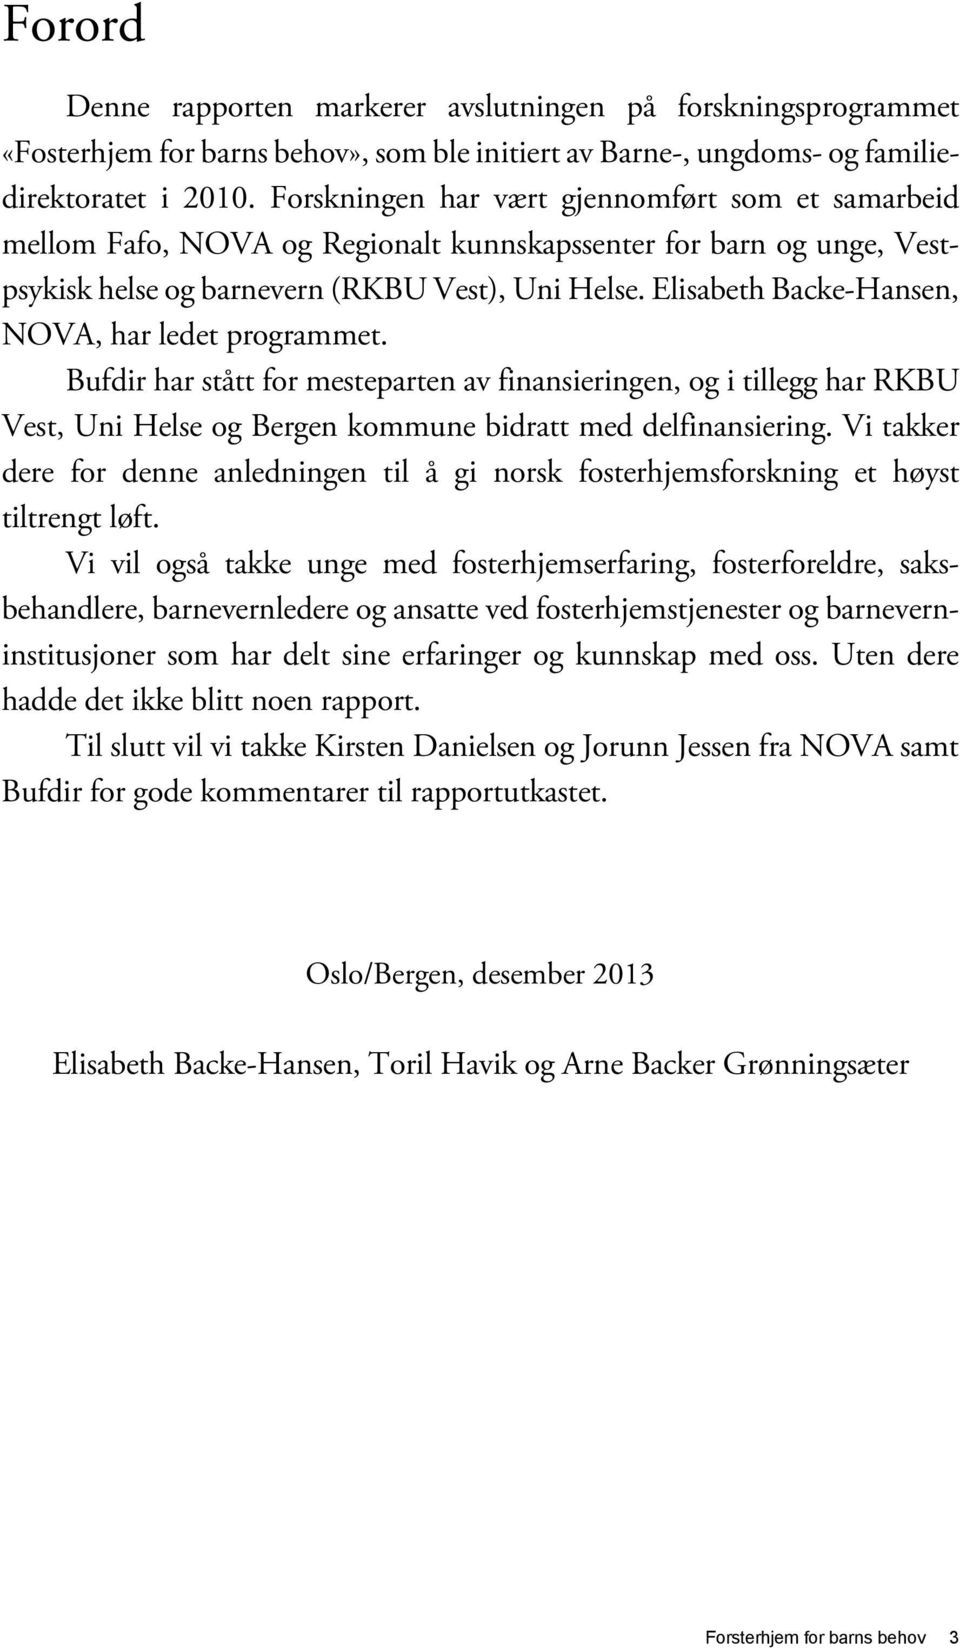 Elisabeth Backe-Hansen, NOVA, har ledet programmet. Bufdir har stått for mesteparten av finansieringen, og i tillegg har RKBU Vest, Uni Helse og Bergen kommune bidratt med delfinansiering.